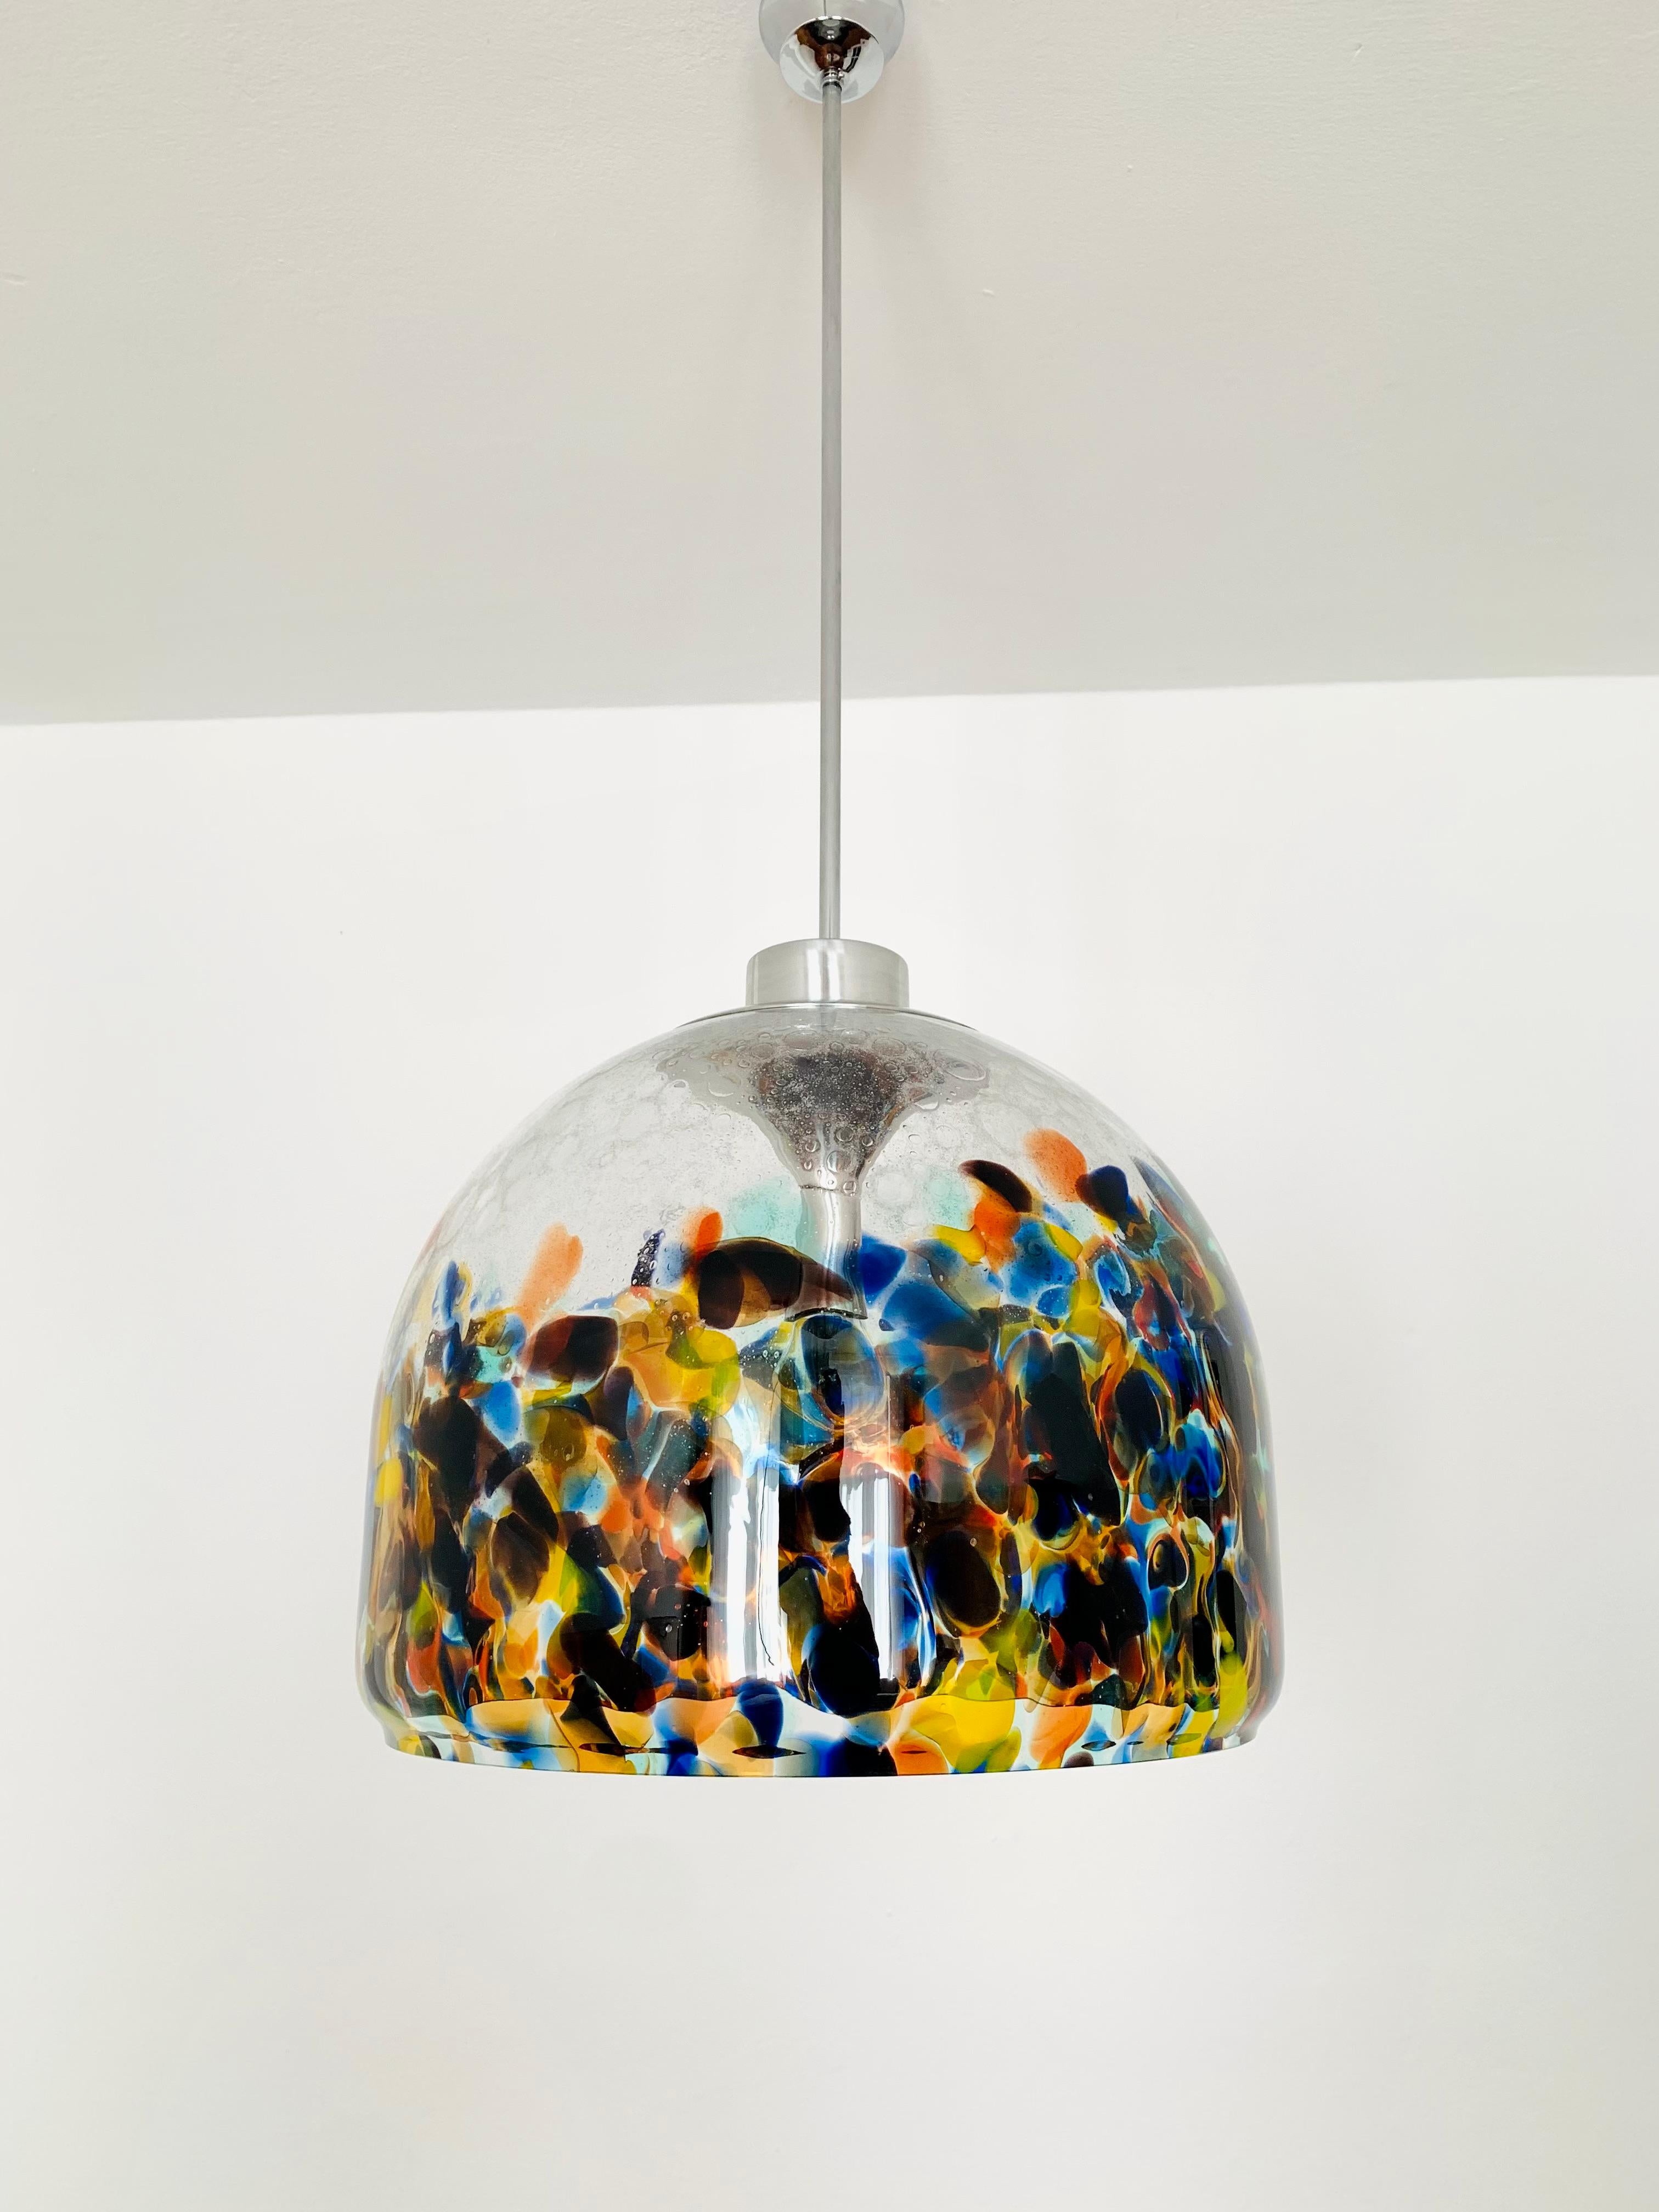 Beeindruckende große bunte Murano-Glaslampe aus den 1960er Jahren.
Außergewöhnlich gelungenes Design und sehr hochwertige Verarbeitung.
Das farbige Glasdekor erzeugt einen sehr spannenden Lichteffekt.

Bedingung:

Sehr guter Vintage-Zustand mit